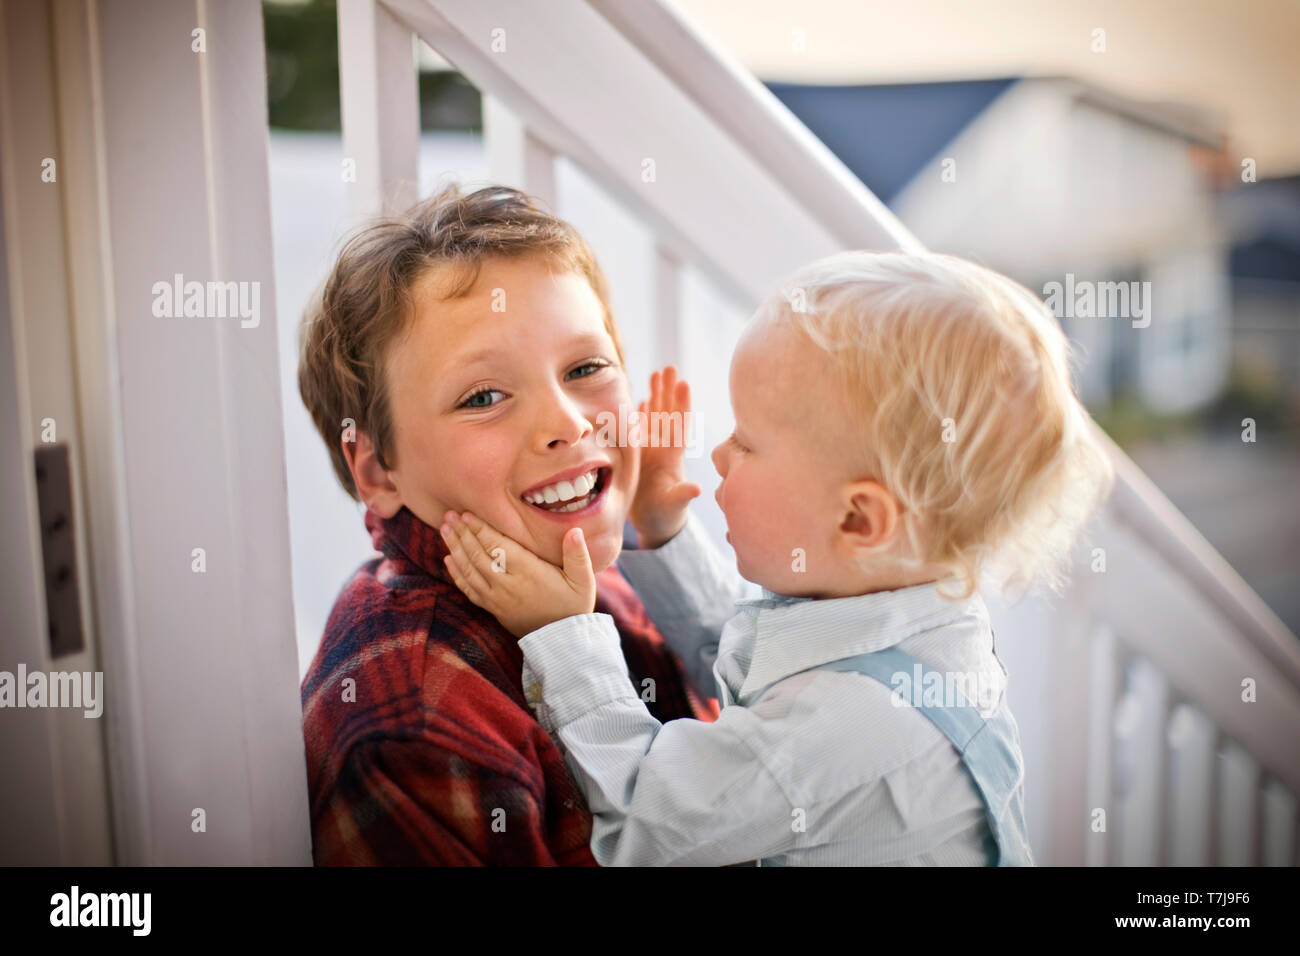 Porträt eines lächelnden Jungen sein Gesicht von seinem jüngeren Bruder berührt, während auf der Veranda seines Hauses sitzen. Stockfoto